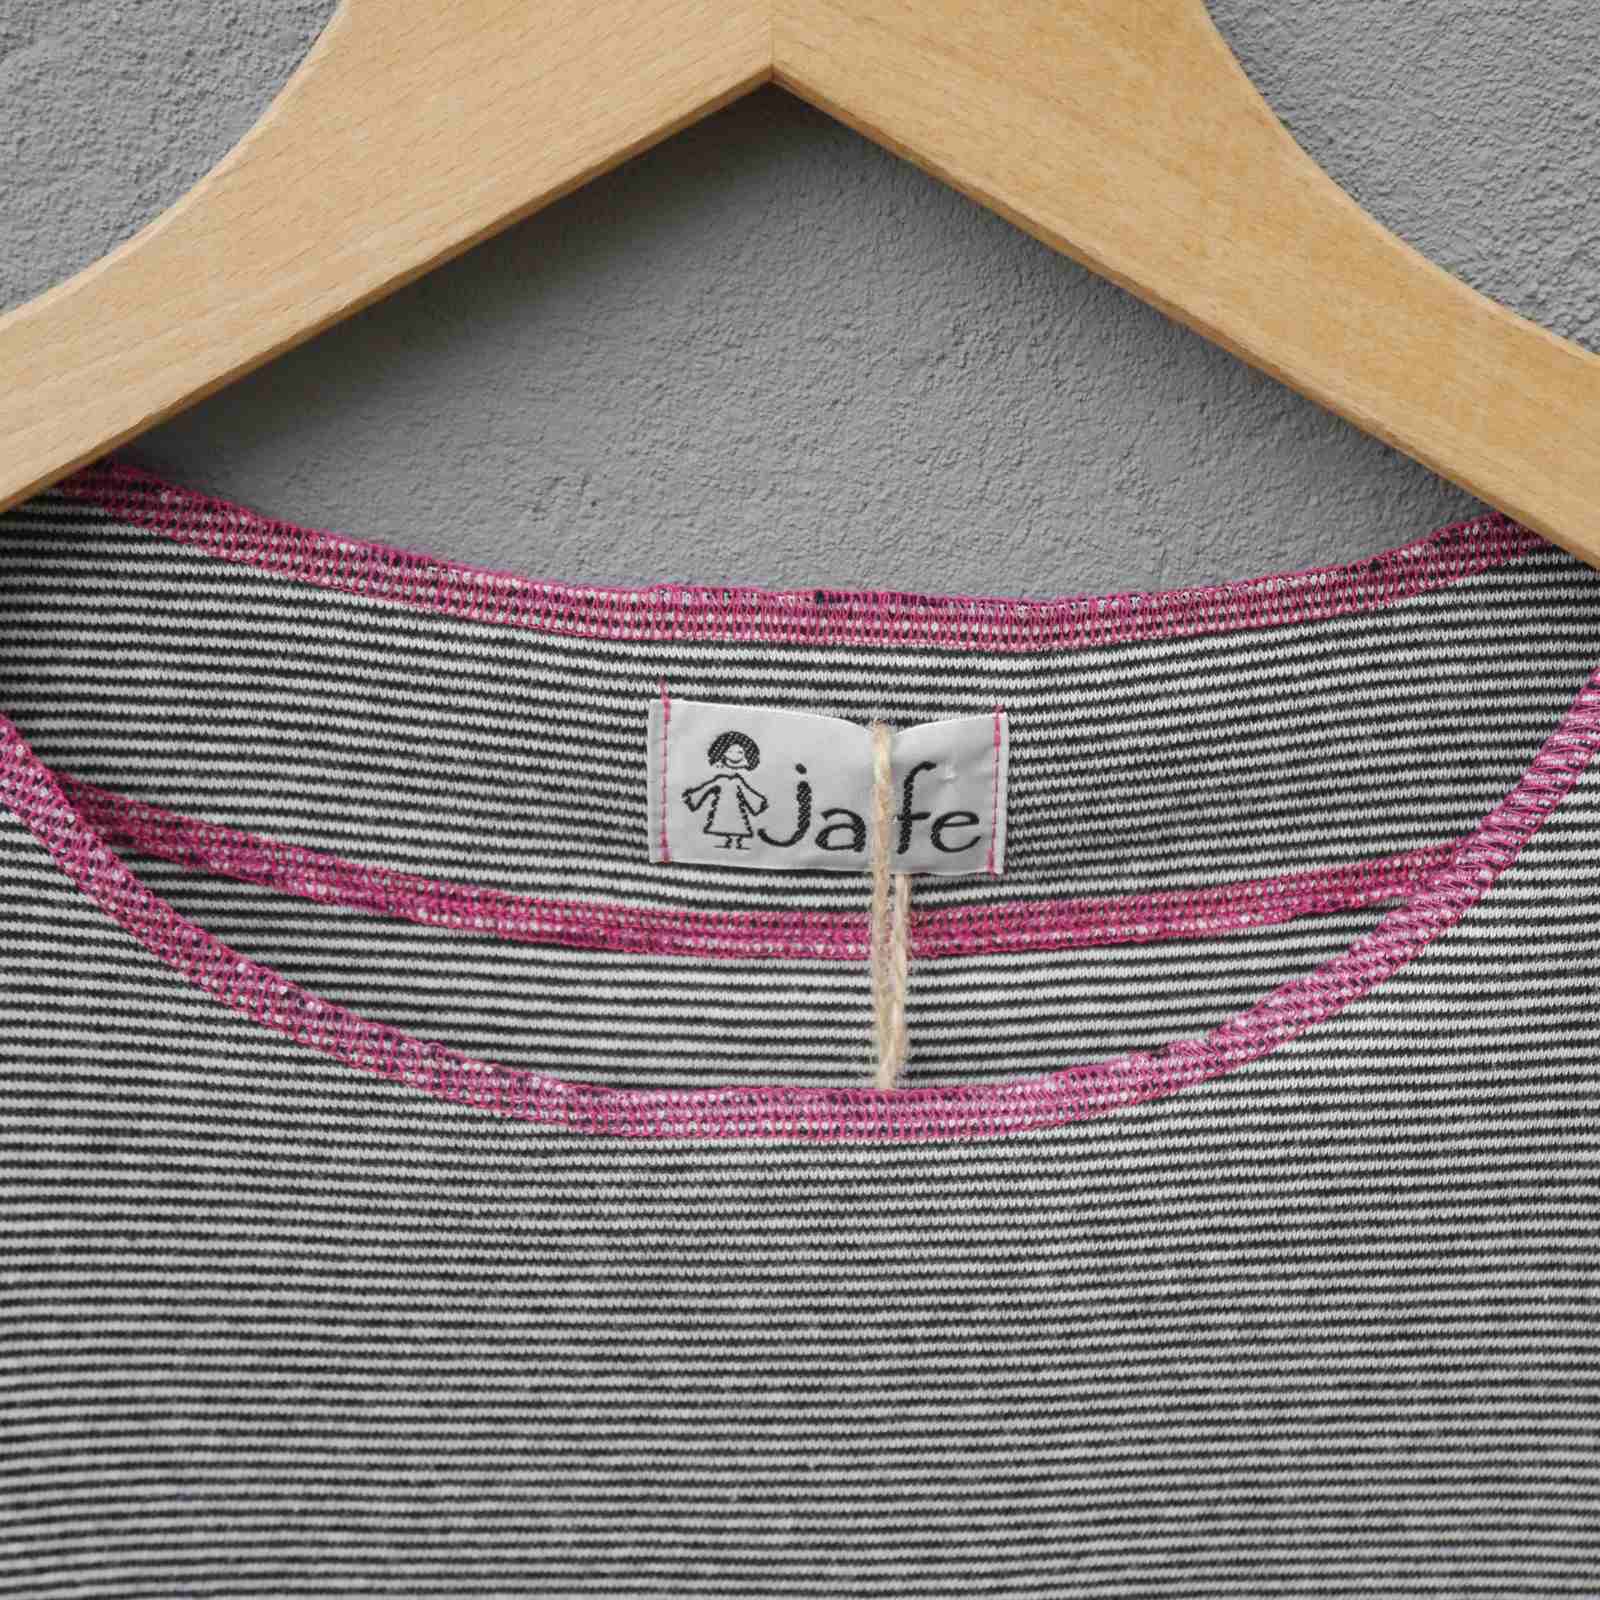 Hals med pink kant på stribet t-shirt fra Jalfe